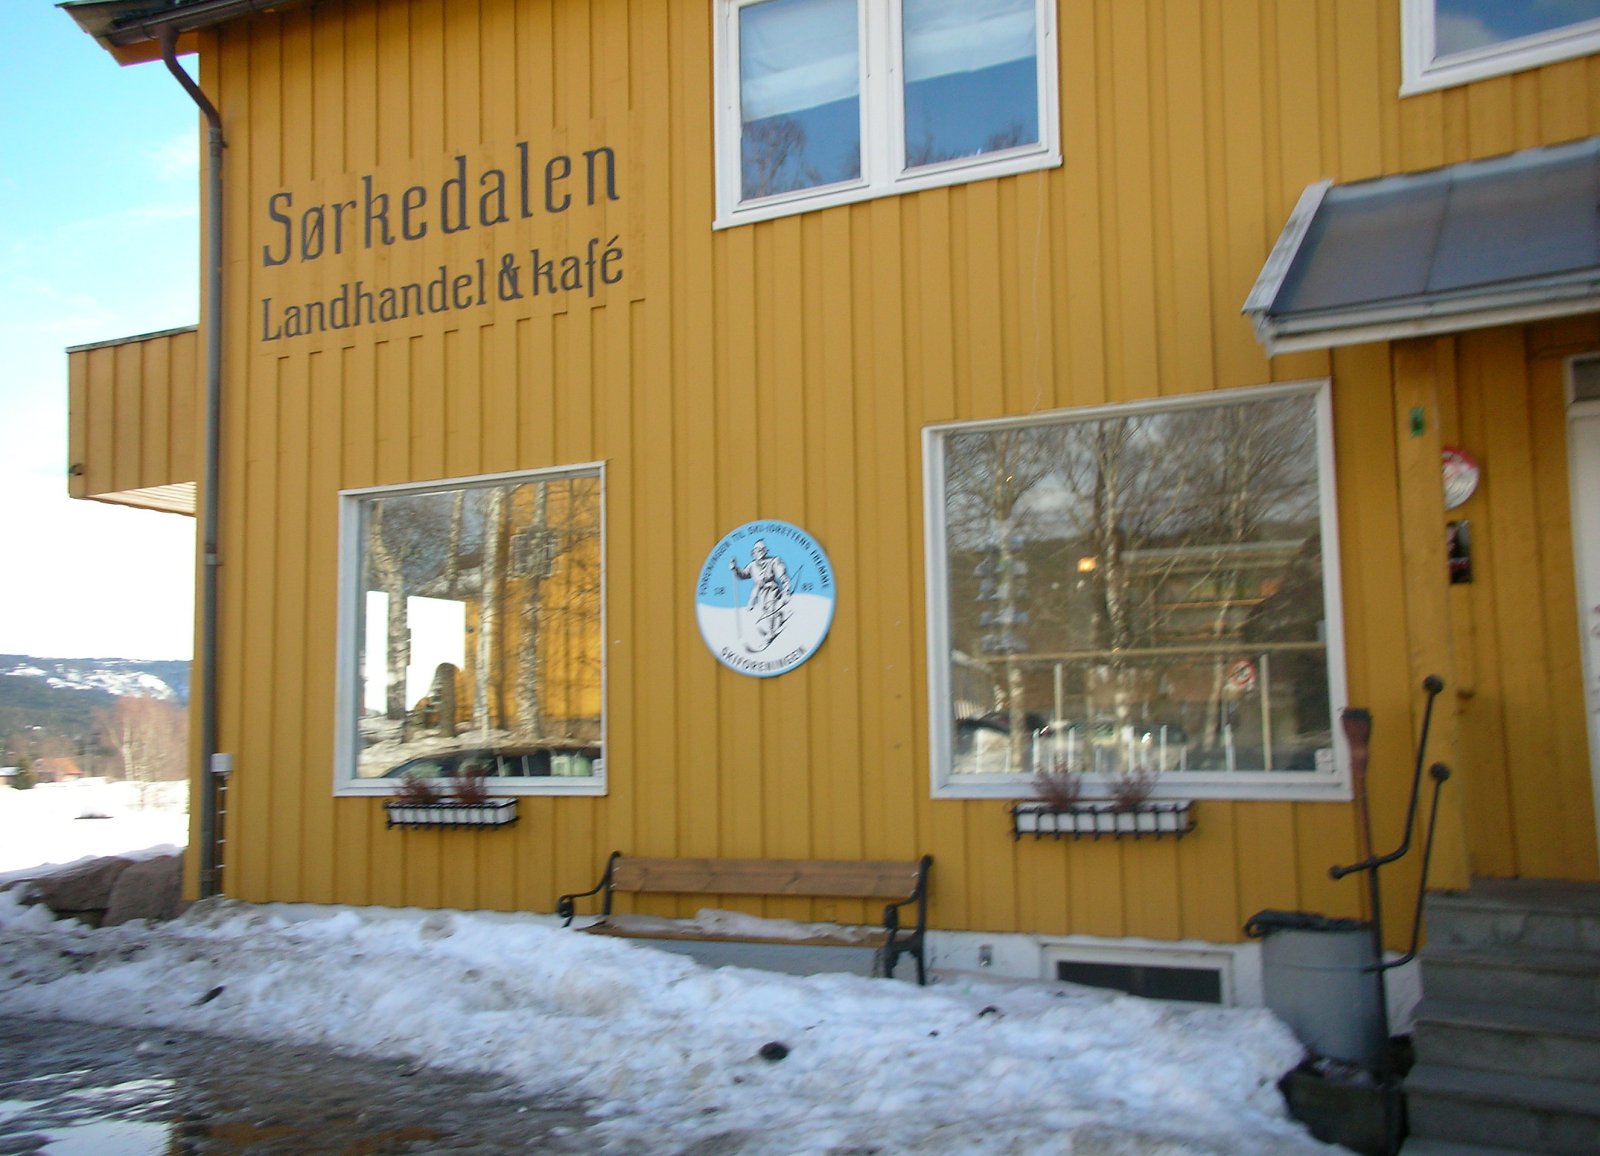 Påmelding til "after-ski" med kåseri og suppeservering på Sørkedalen Landhandel 27. februar